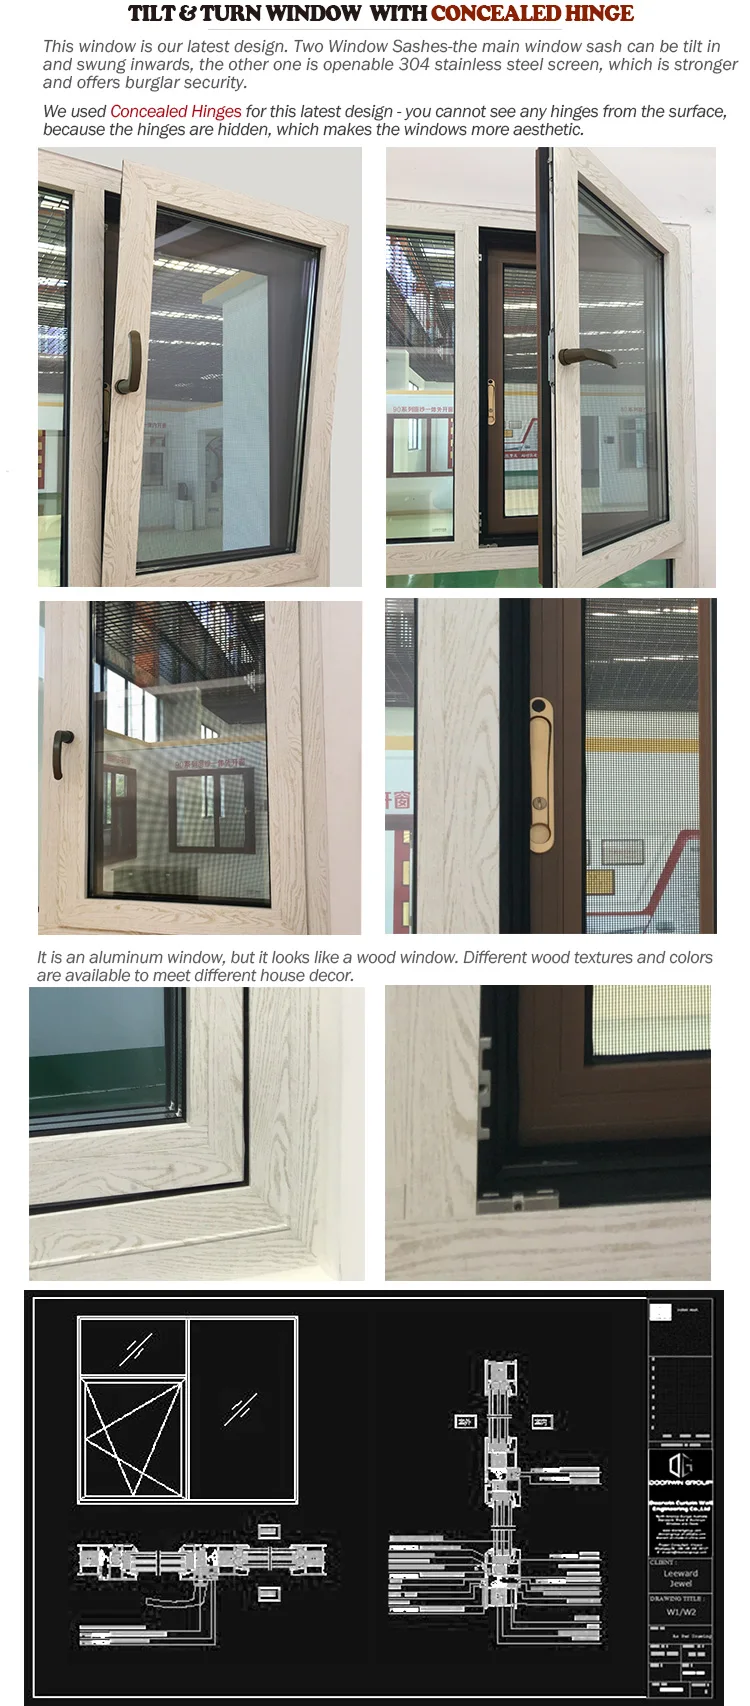 Wood grain finish aluminum window windows tilt turn